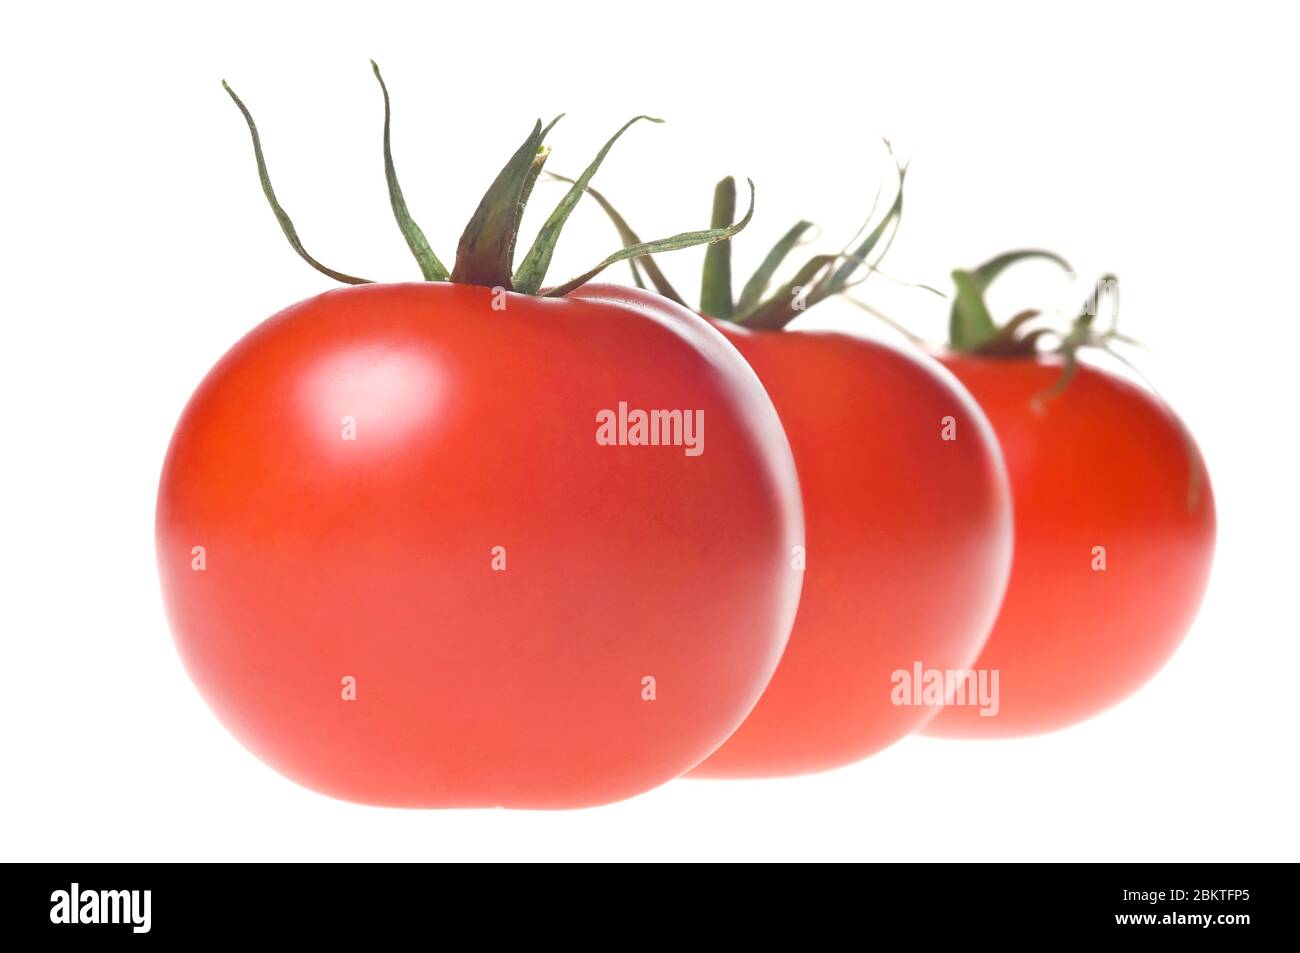 Tomates rouges mûres fraîches avec tige verte en rangée, isolées sur fond blanc. Prise de vue en studio. Banque D'Images